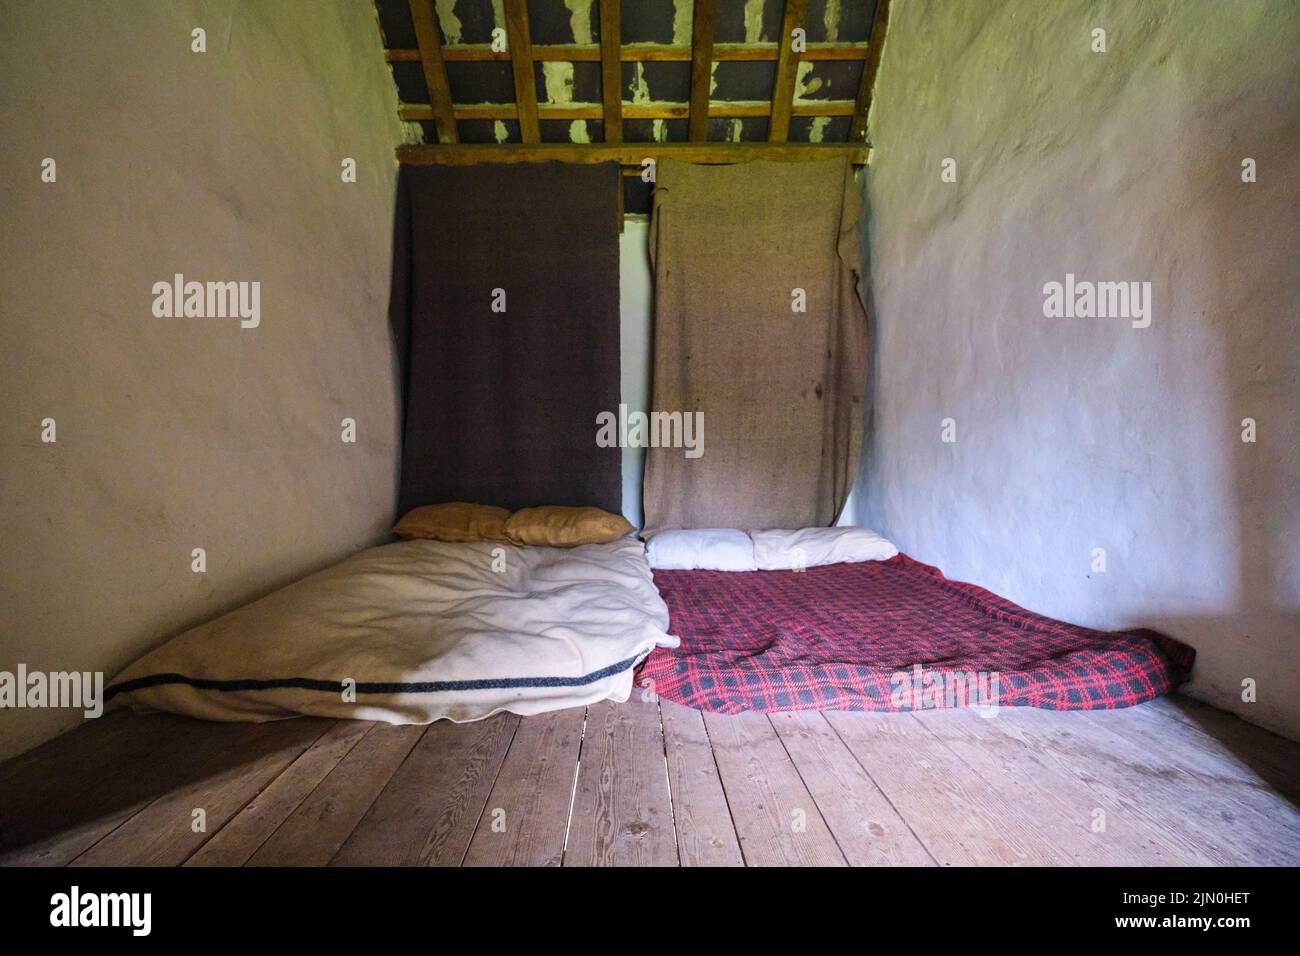 La chambre des travailleurs pauvres avec un petit matelas et pas de lit, dormant au sol nu. Dans une récréation d'une maison de travail typique, maison de travail générique, à Blaena Banque D'Images